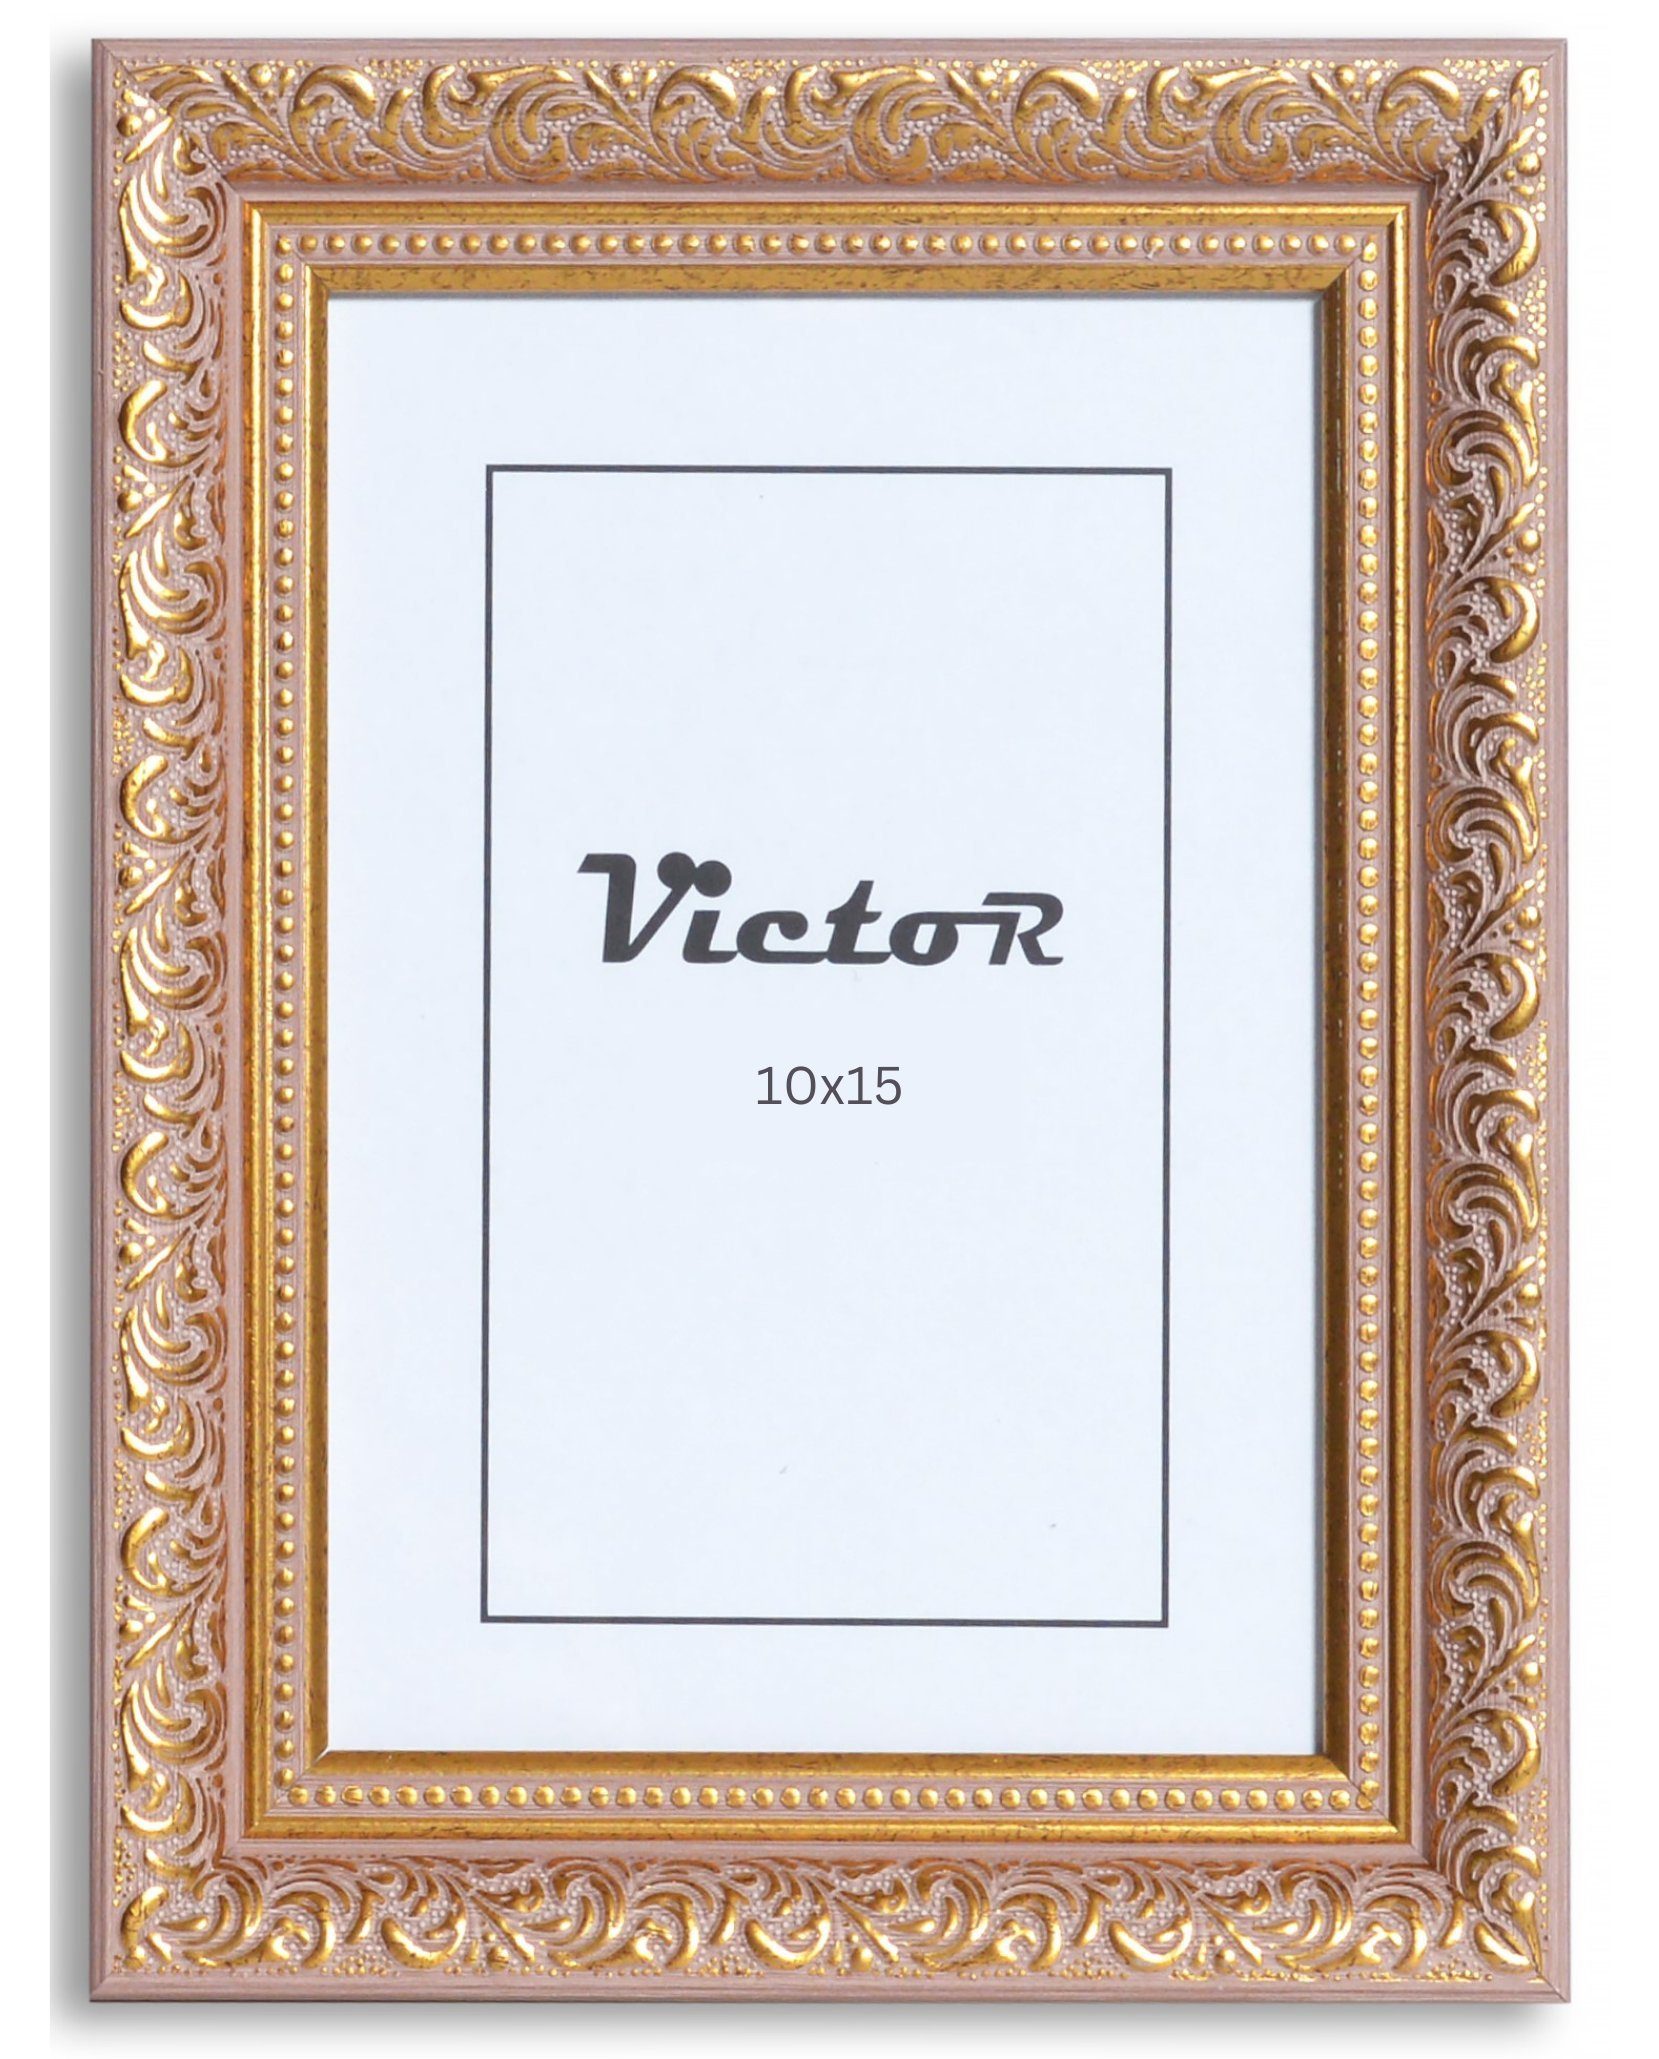 Victor (Zenith) Bilderrahmen Rubens, Bilderrahmen 10x15 cm Rose Gold A6, Bilderrahmen Barock, Antik | Einzelrahmen